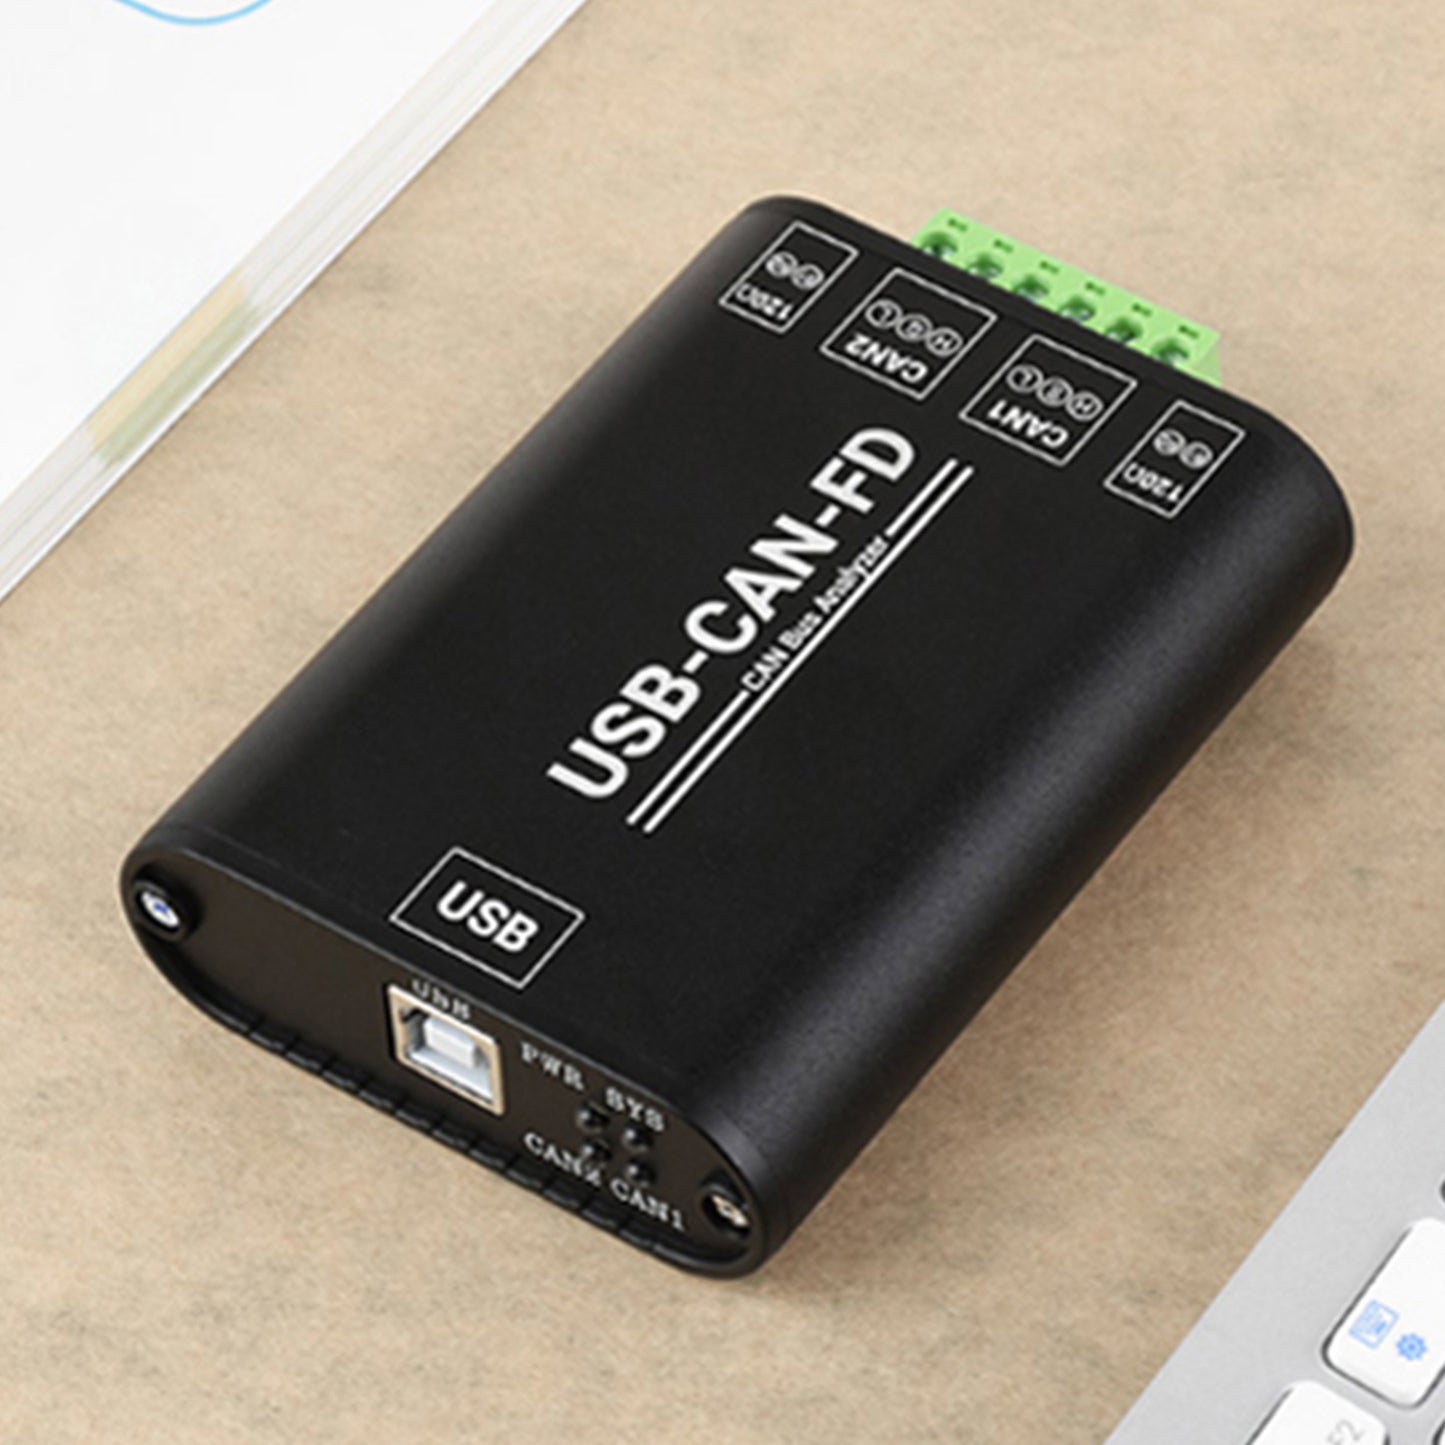 USB-zu-CAN-FD-Schnittstellenkonverter, Kommunikationsmodul mit elektrischer Isolierung